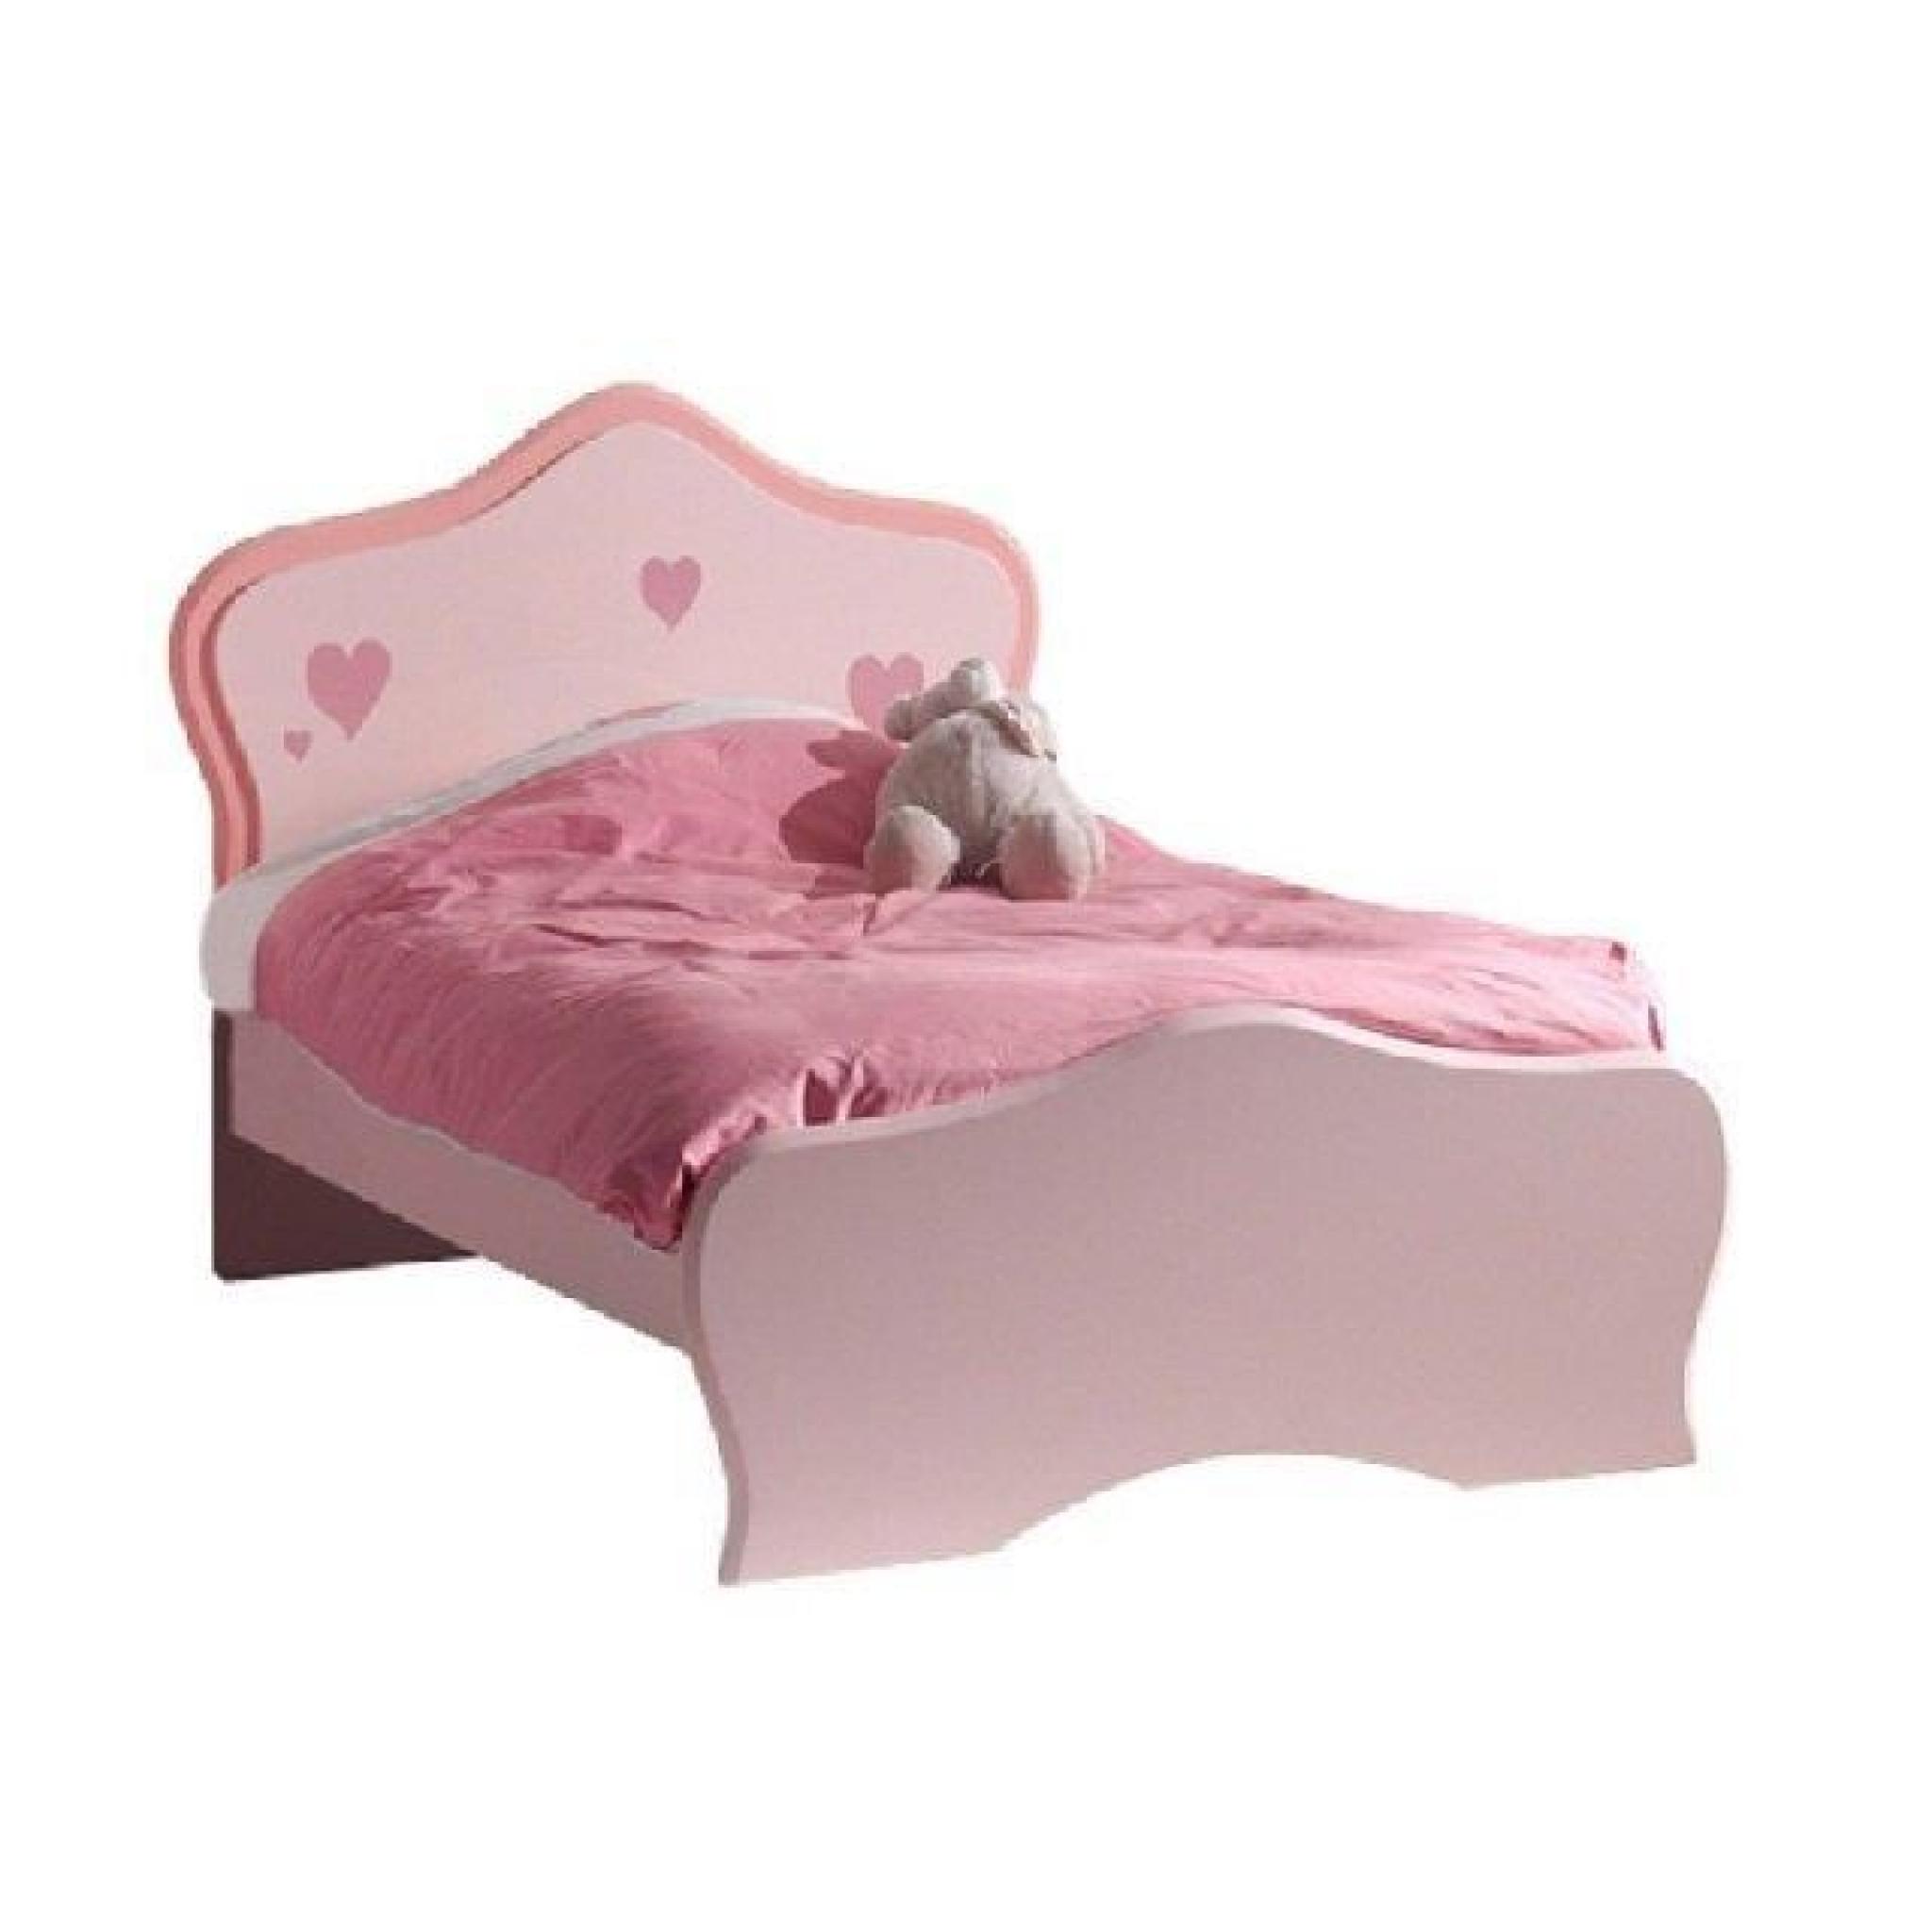 Voila LIZZY un lit de princesse au design moderne et tendance qui apportera une atmosphère chaleureuse et romantique dans la cham...